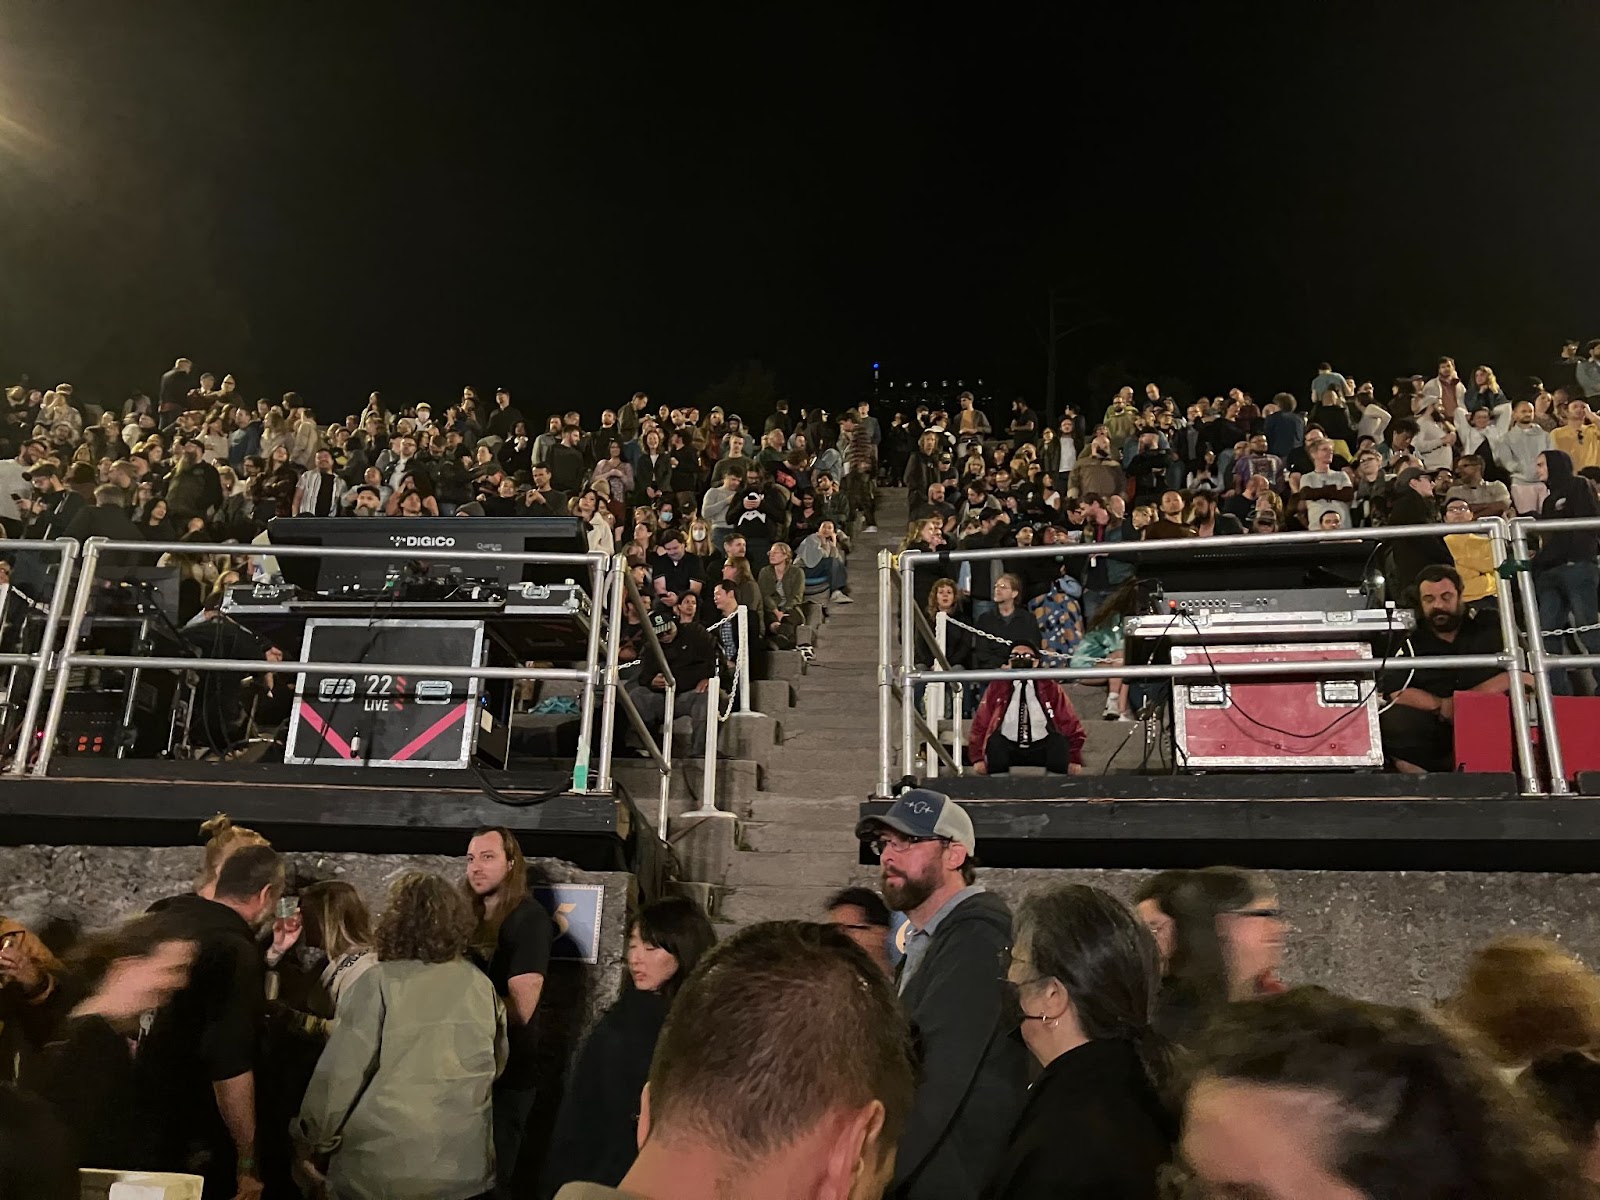 Ελληνικό θέατρο, ο Sigur Ros κλίνει εύκολα προς τον αυτοσχεδιασμό